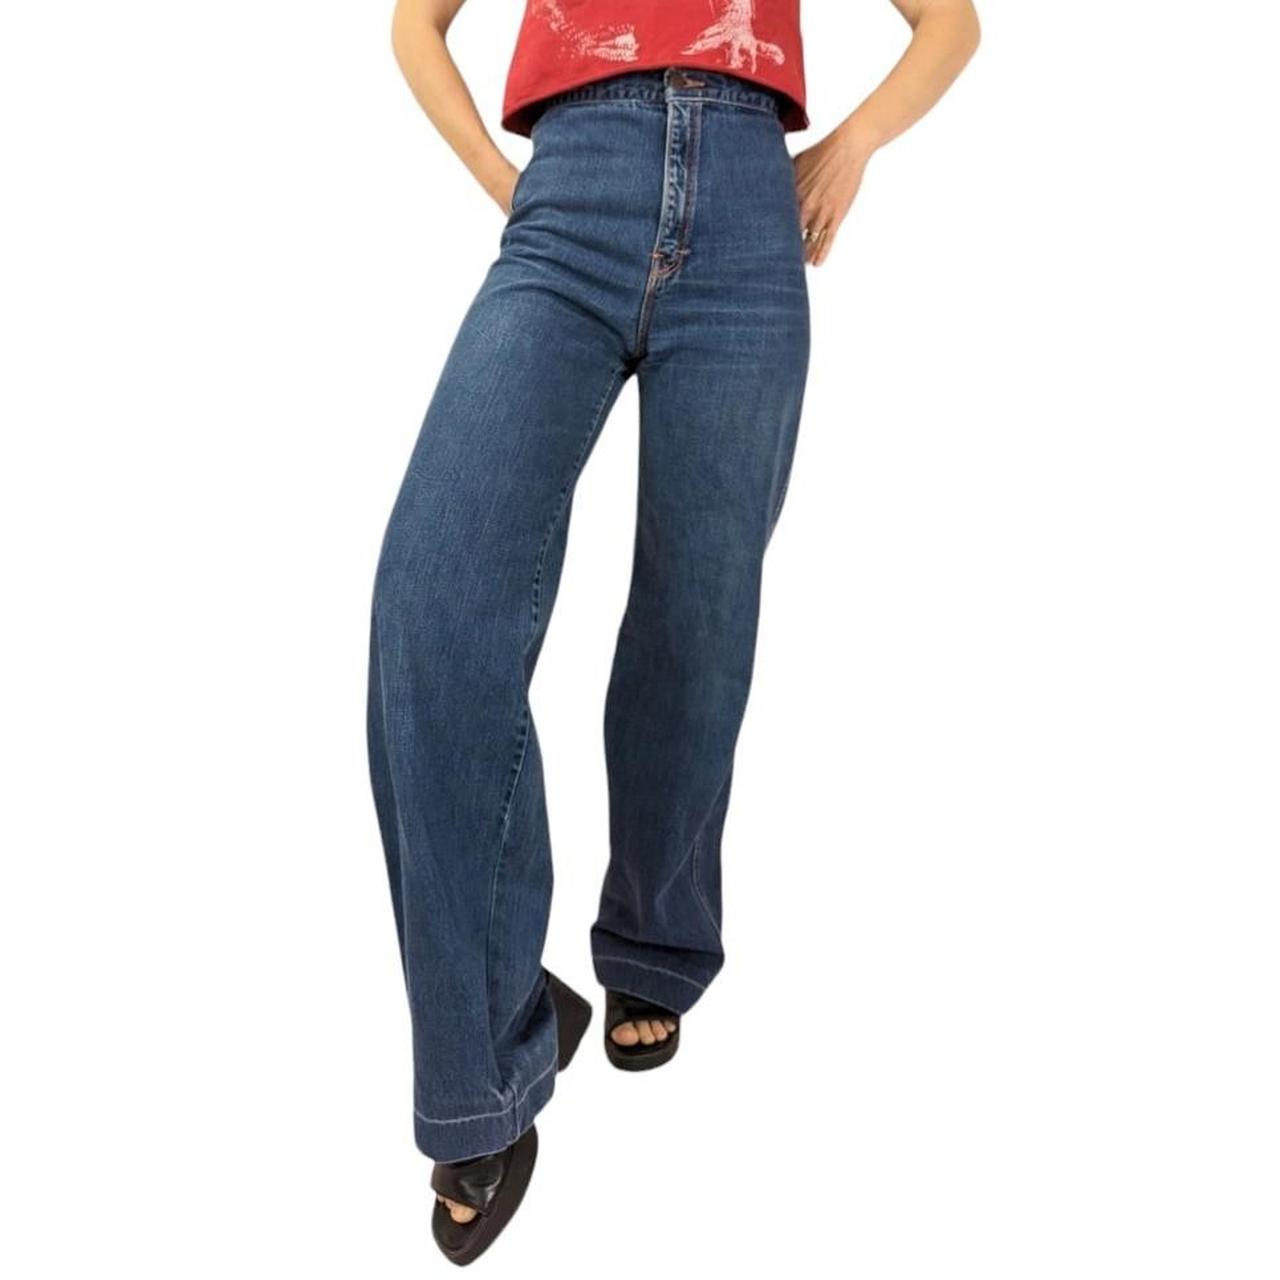 70's wide leg jeans. By San Francisco Riding Gear.... - Depop